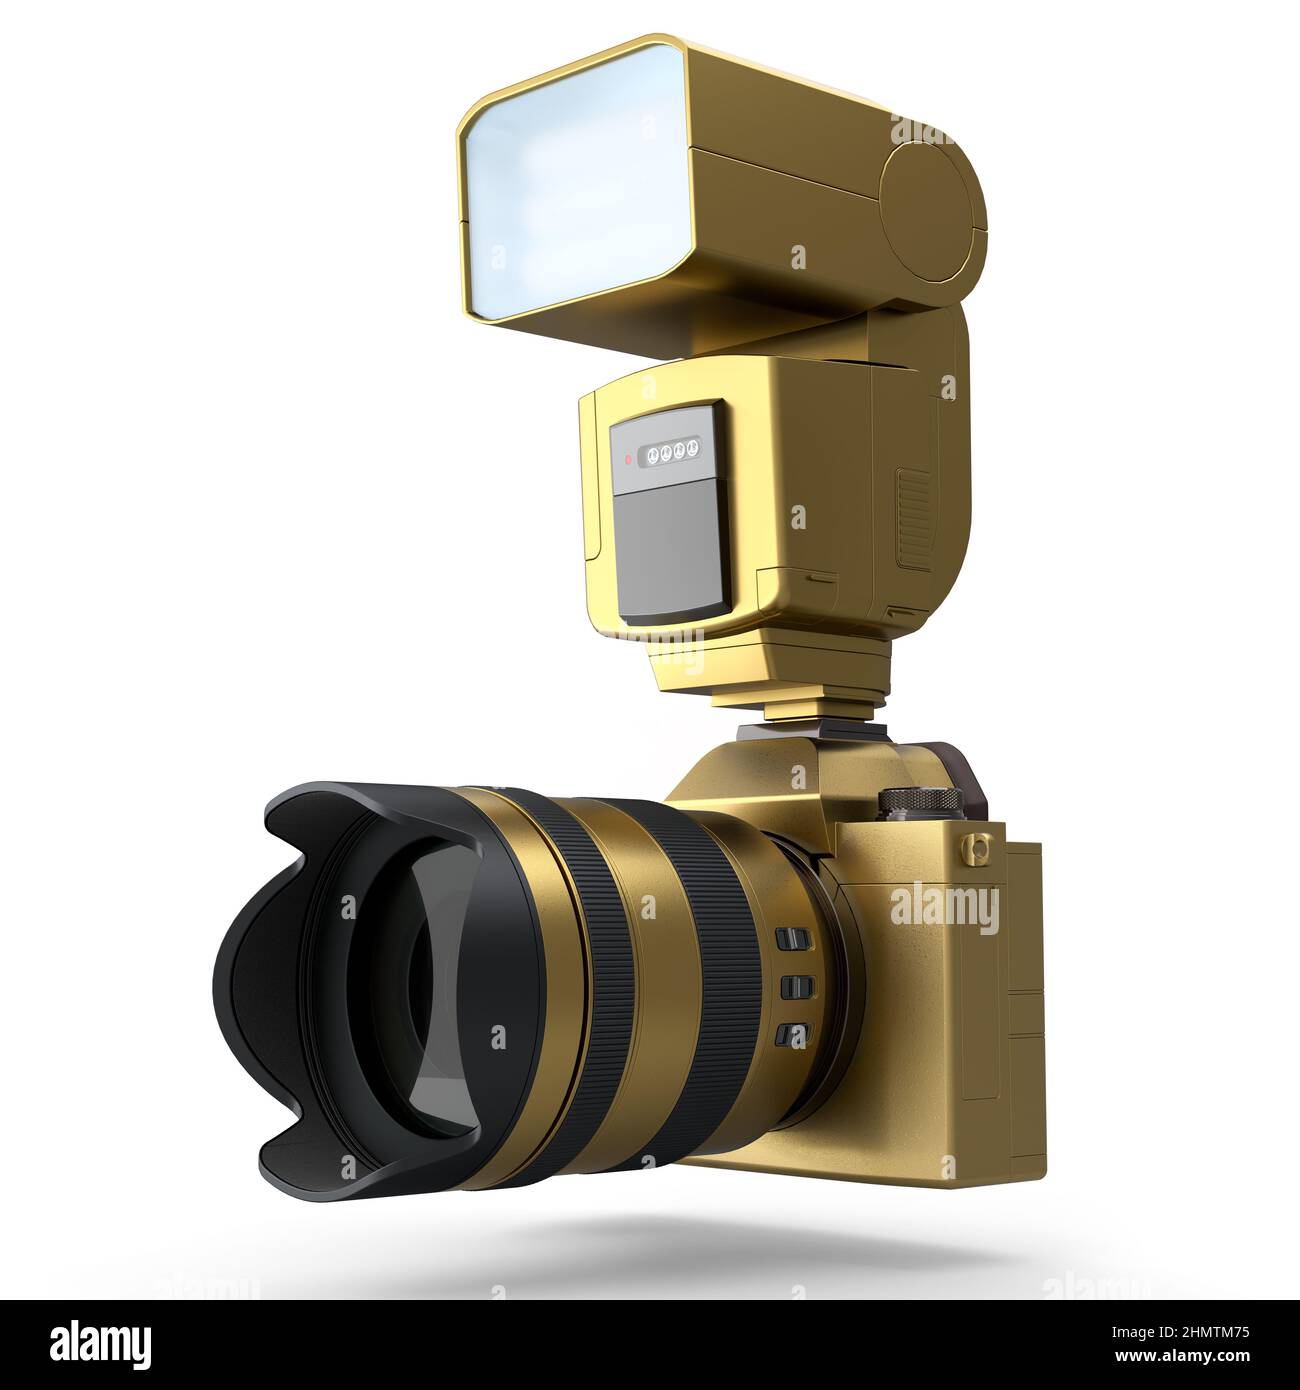 Concetto di oro inesistente DSLR fotocamera con obiettivo e flash esterno speedlight isolato su sfondo bianco. 3D rendering di fotografia professionale Foto Stock